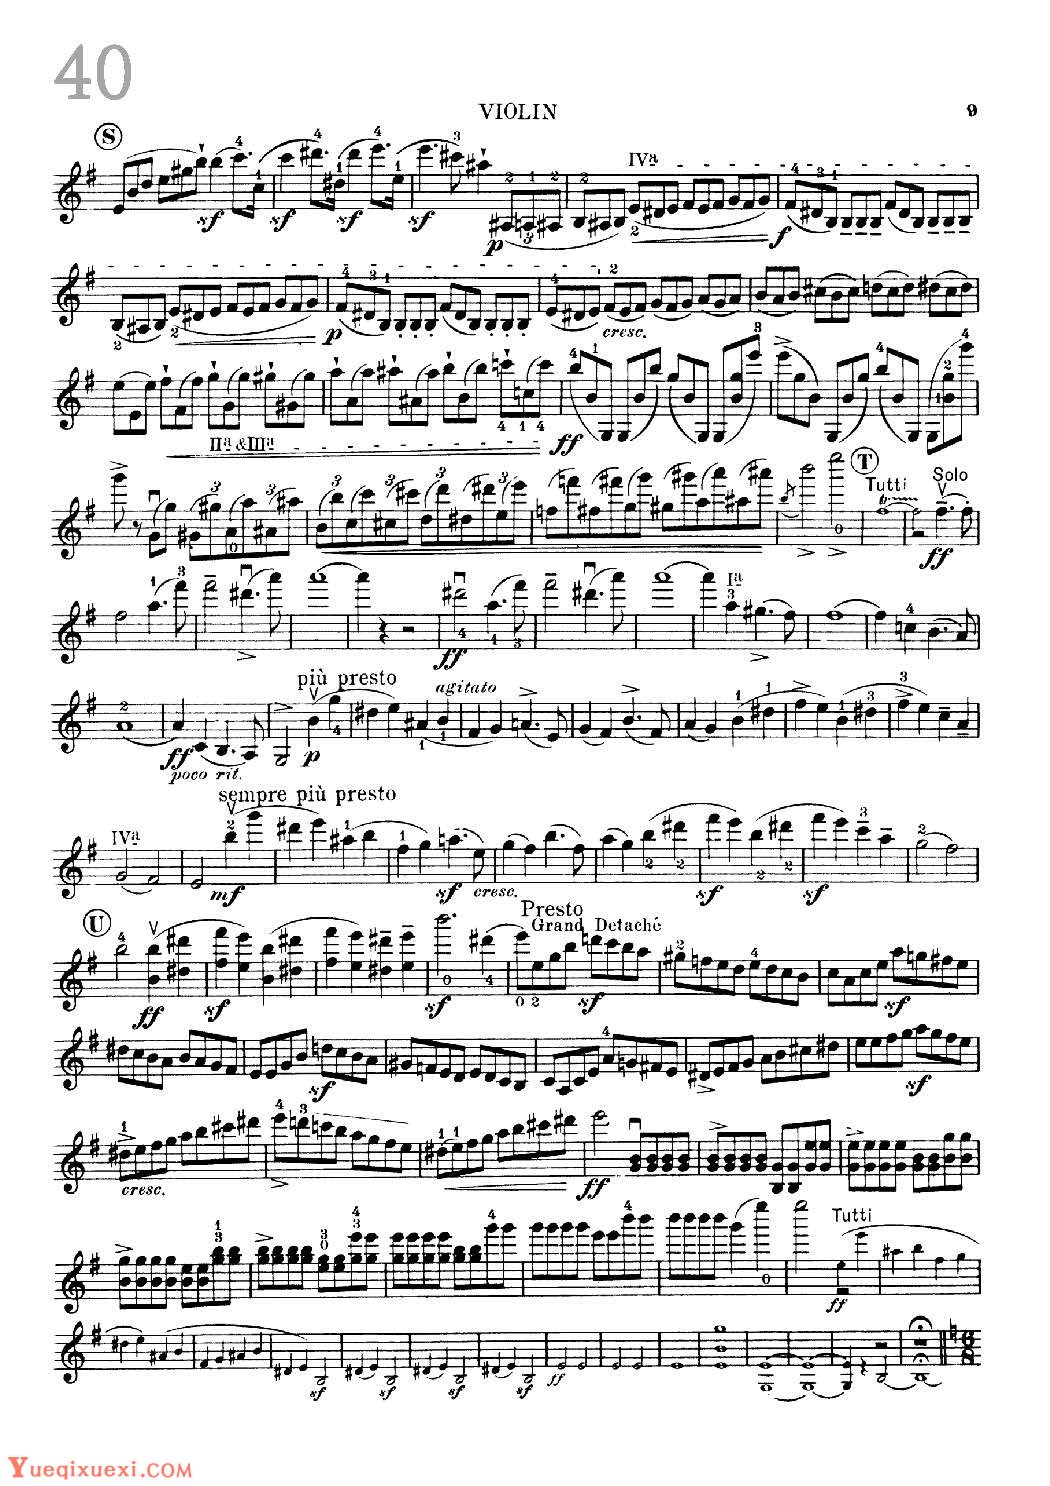 小提琴独奏乐曲谱《Concerto in E Minor/Classic Romance》戴维嘉雷特